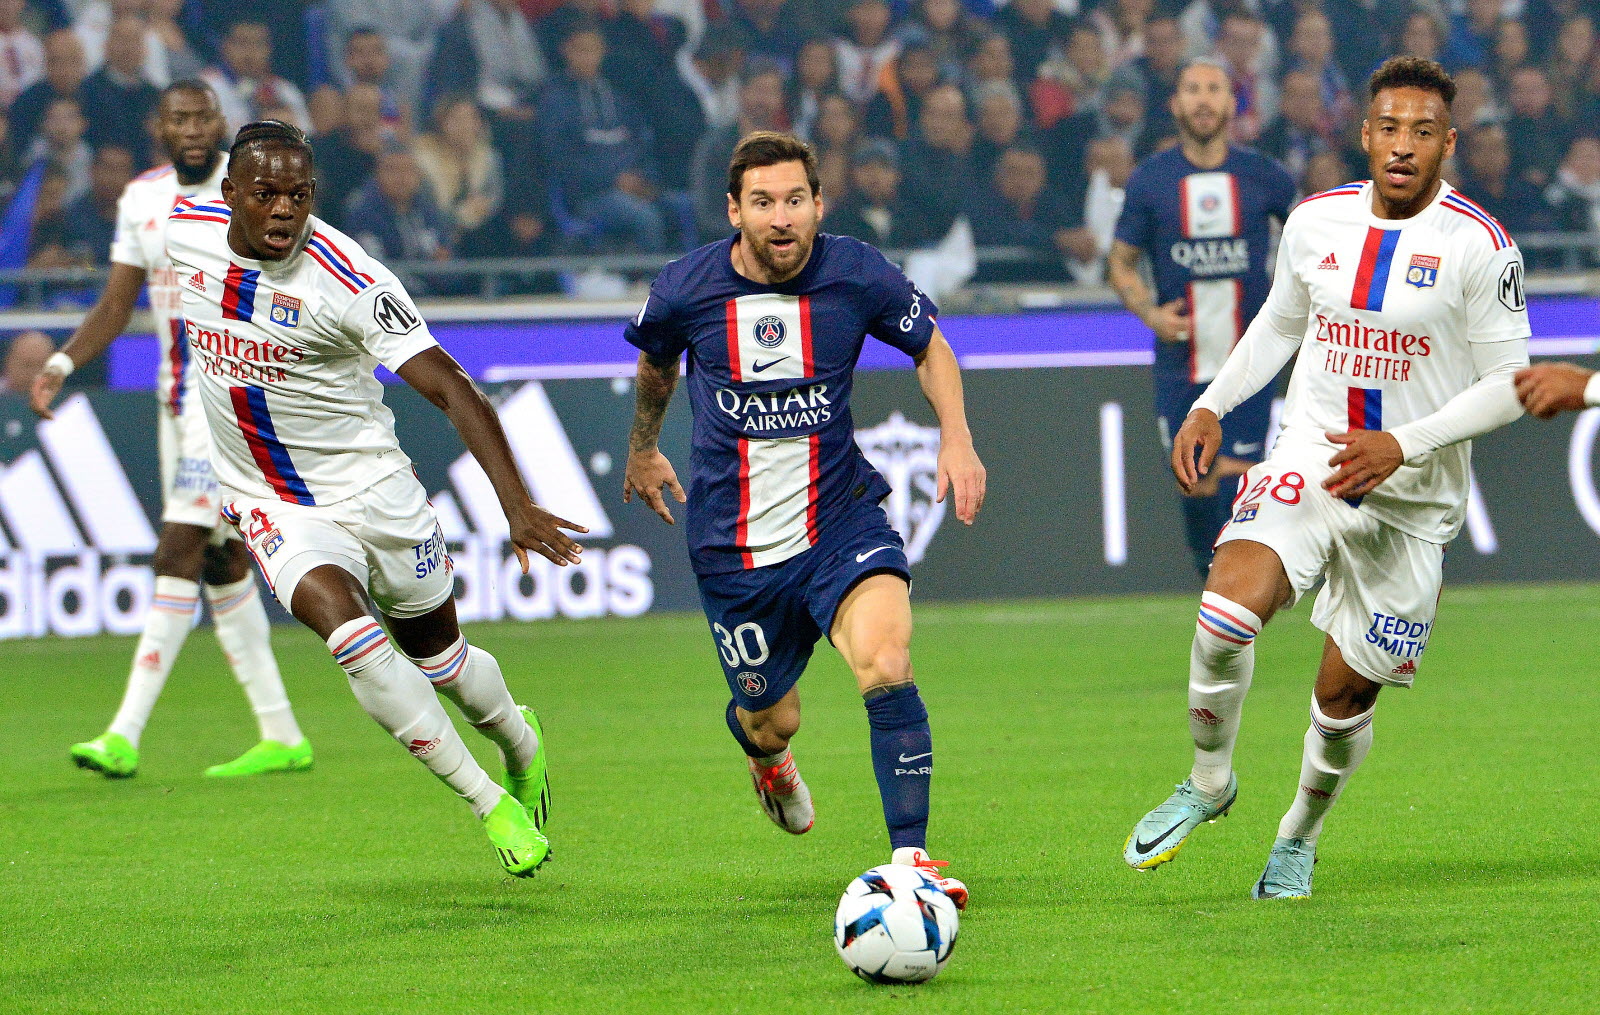 PSG - OL : comment regarder gratuitement le match de la Ligue 1 en streaming ce dimanche 2 avril ?